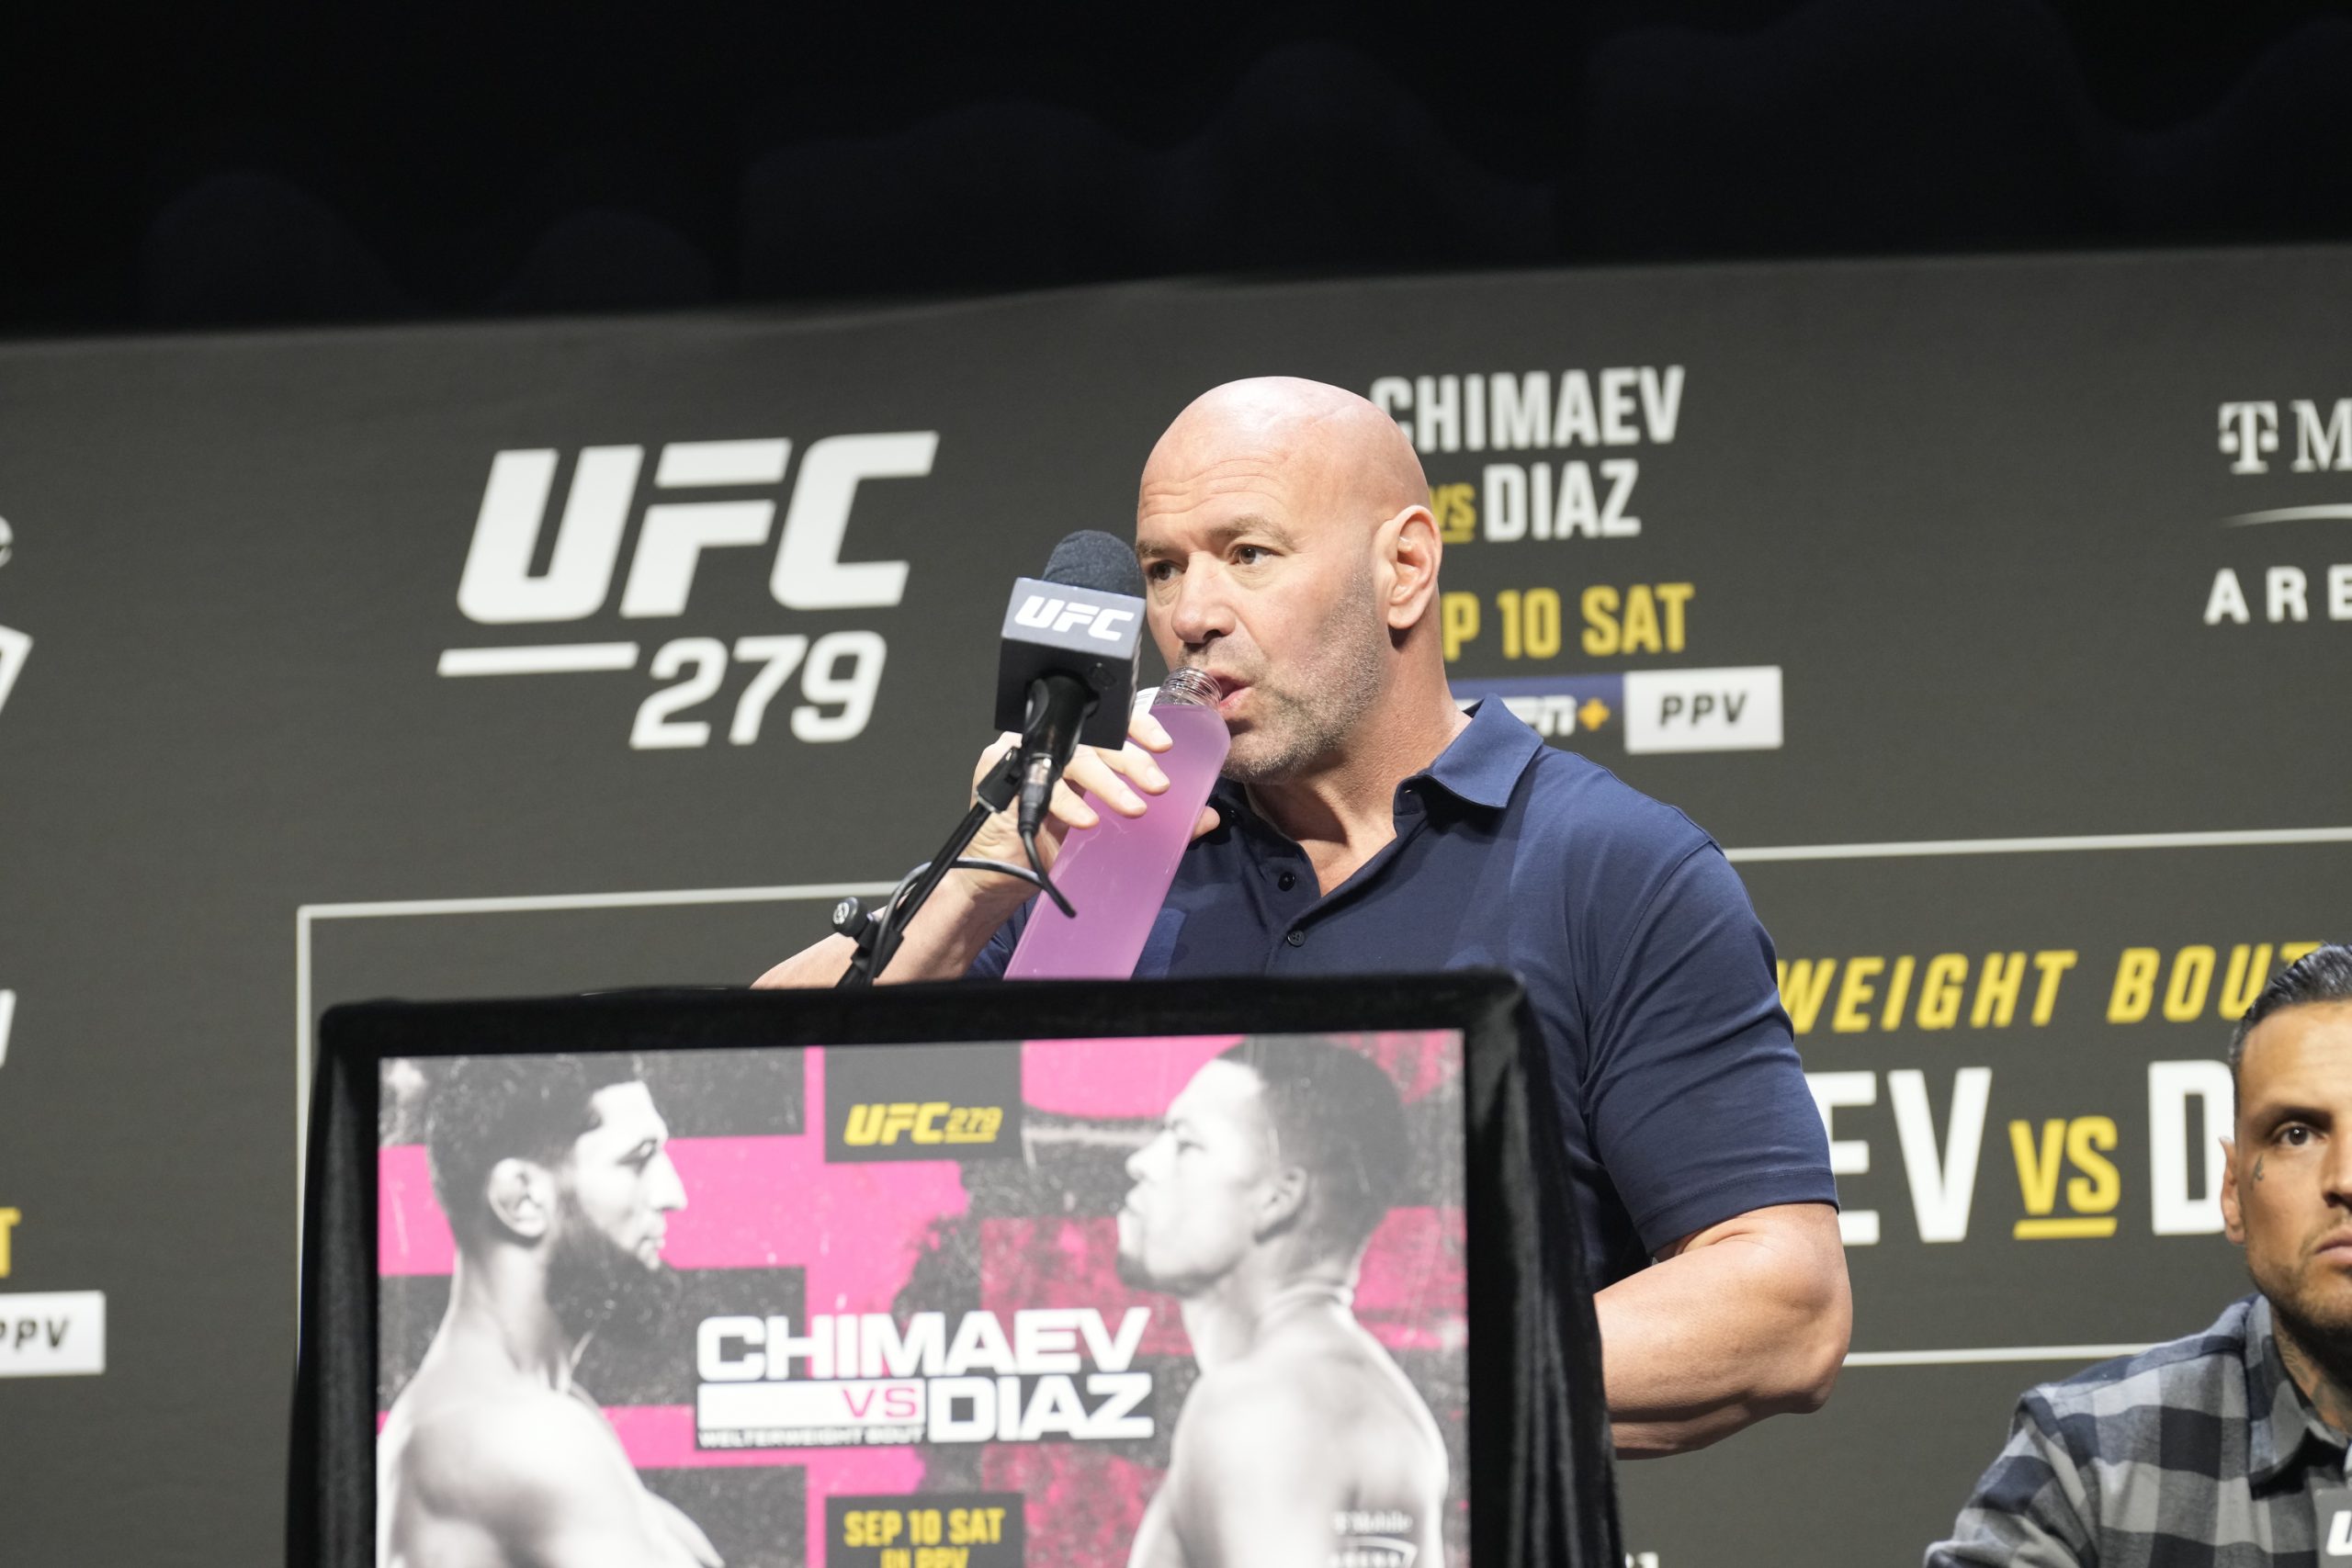 Confusão entre atletas nos bastidores cancela coletiva do UFC 279